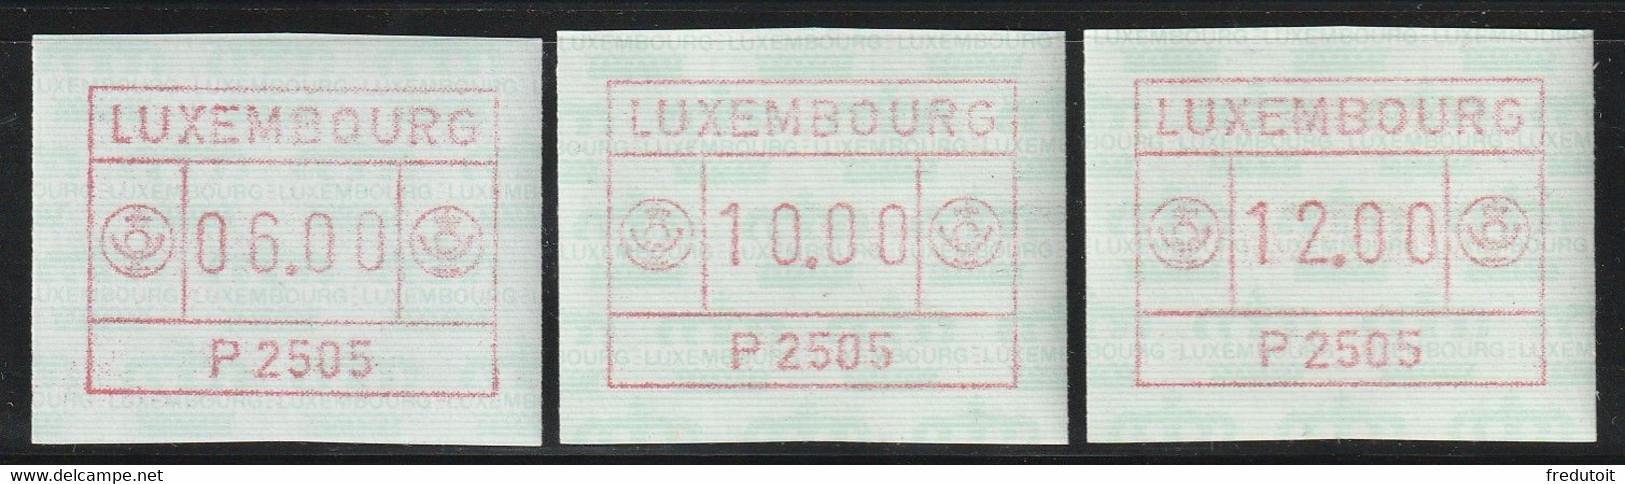 LUXEMBOURG - Timbres De Distributeurs - N°1 (1983) P2505 - Automatenmarken